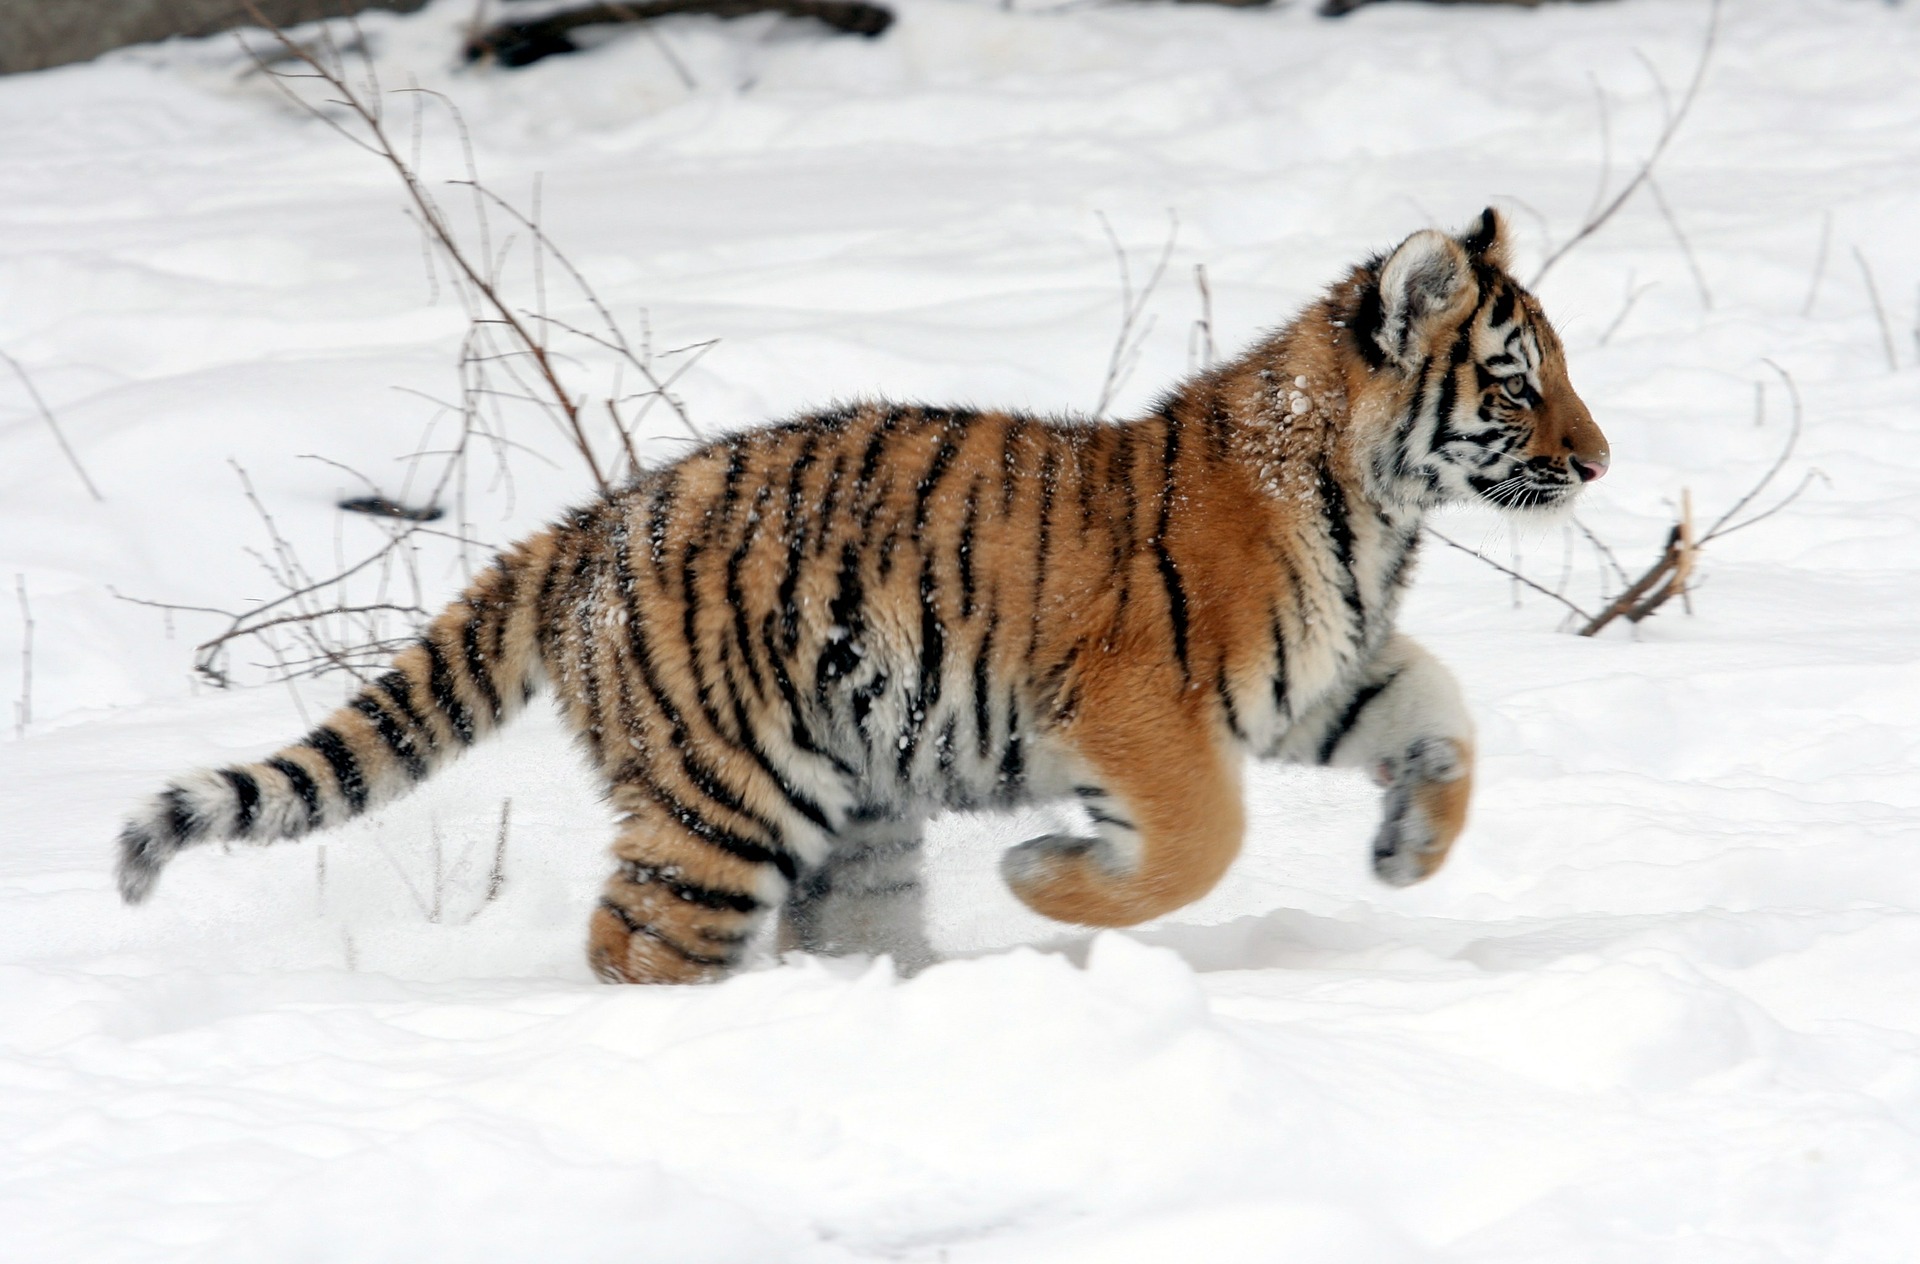 A Tiger Cub Running on Snow